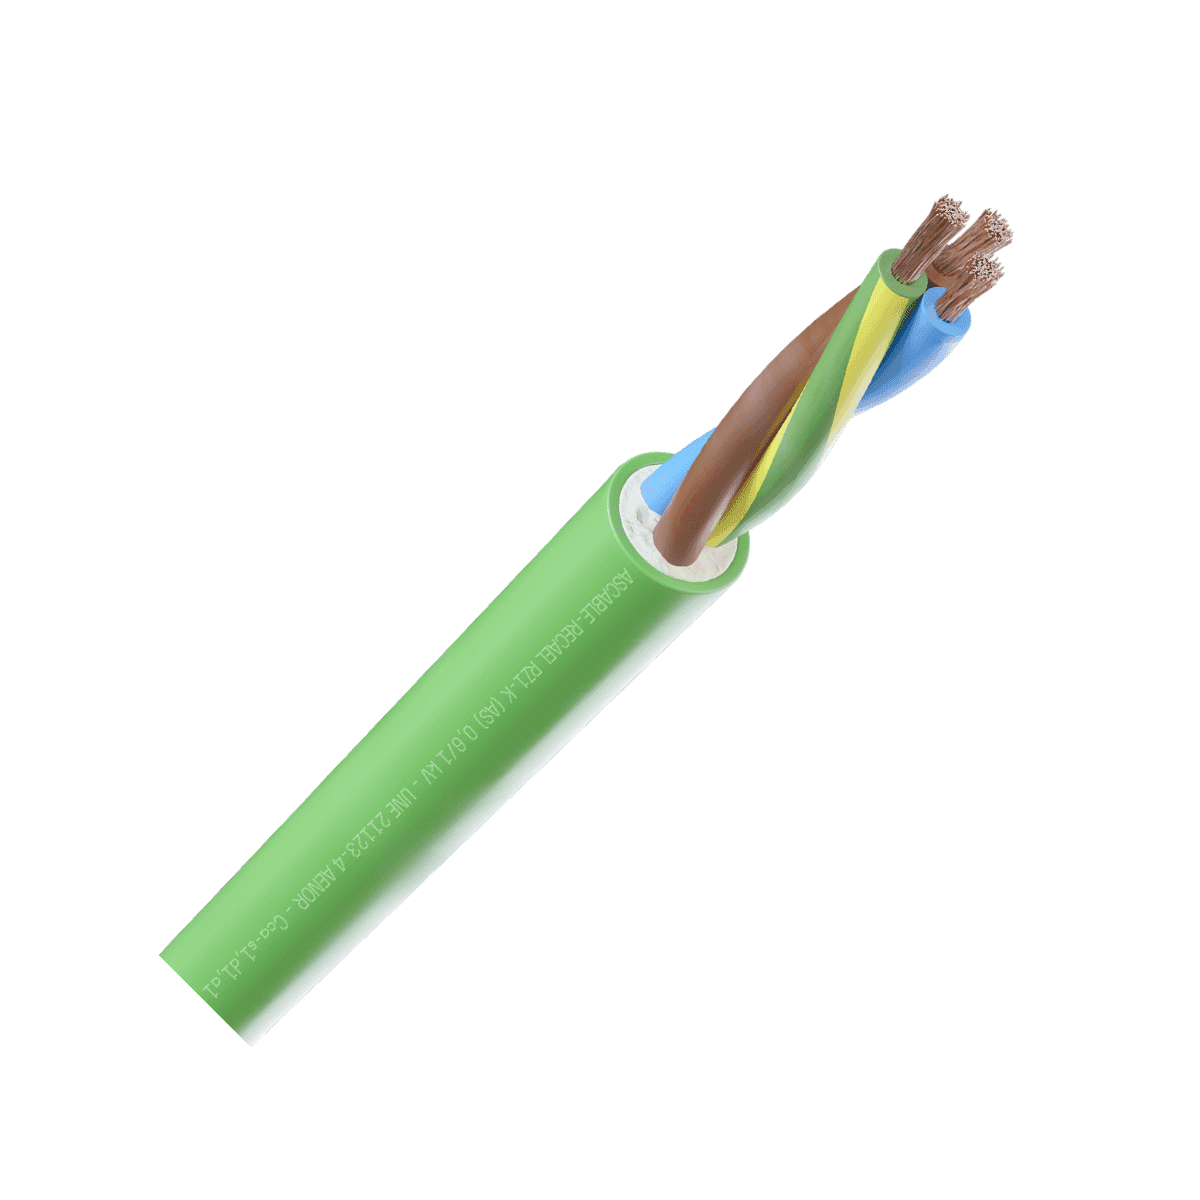 Cable manguera RZ1-K 1KV CPR 3G2,5mm2 verde - Rollo de 100 metros con referencia 530338217163 de la marca RECAEL